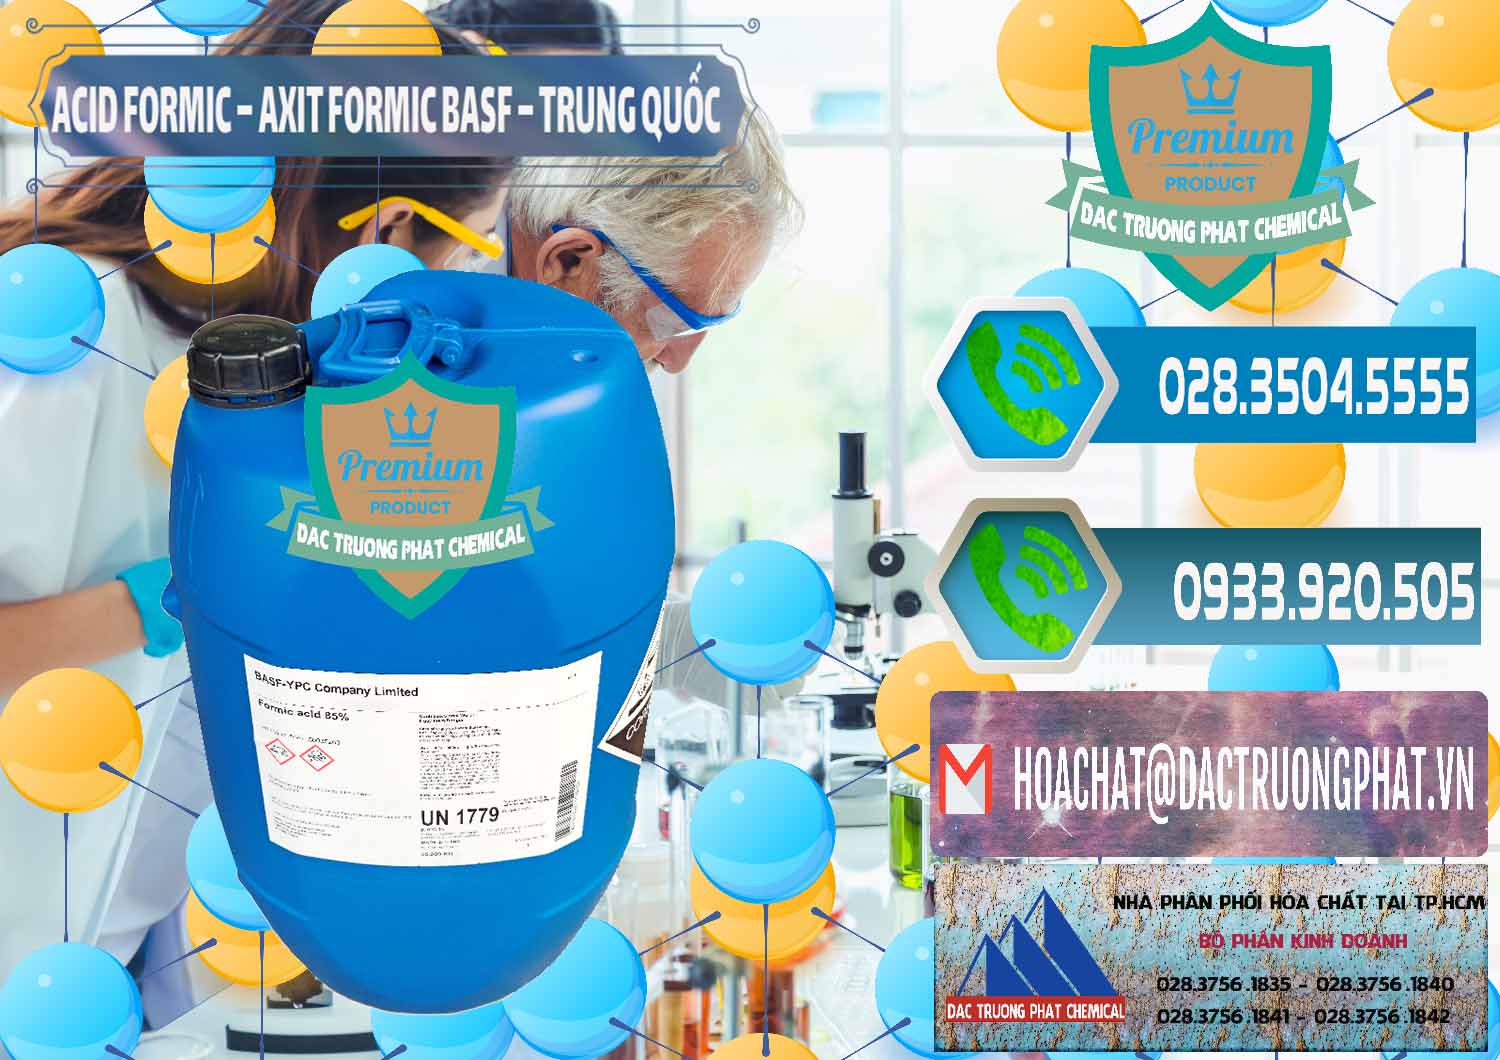 Nơi cung cấp _ bán Acid Formic - Axit Formic BASF Trung Quốc China - 0025 - Chuyên kinh doanh và cung cấp hóa chất tại TP.HCM - congtyhoachat.net